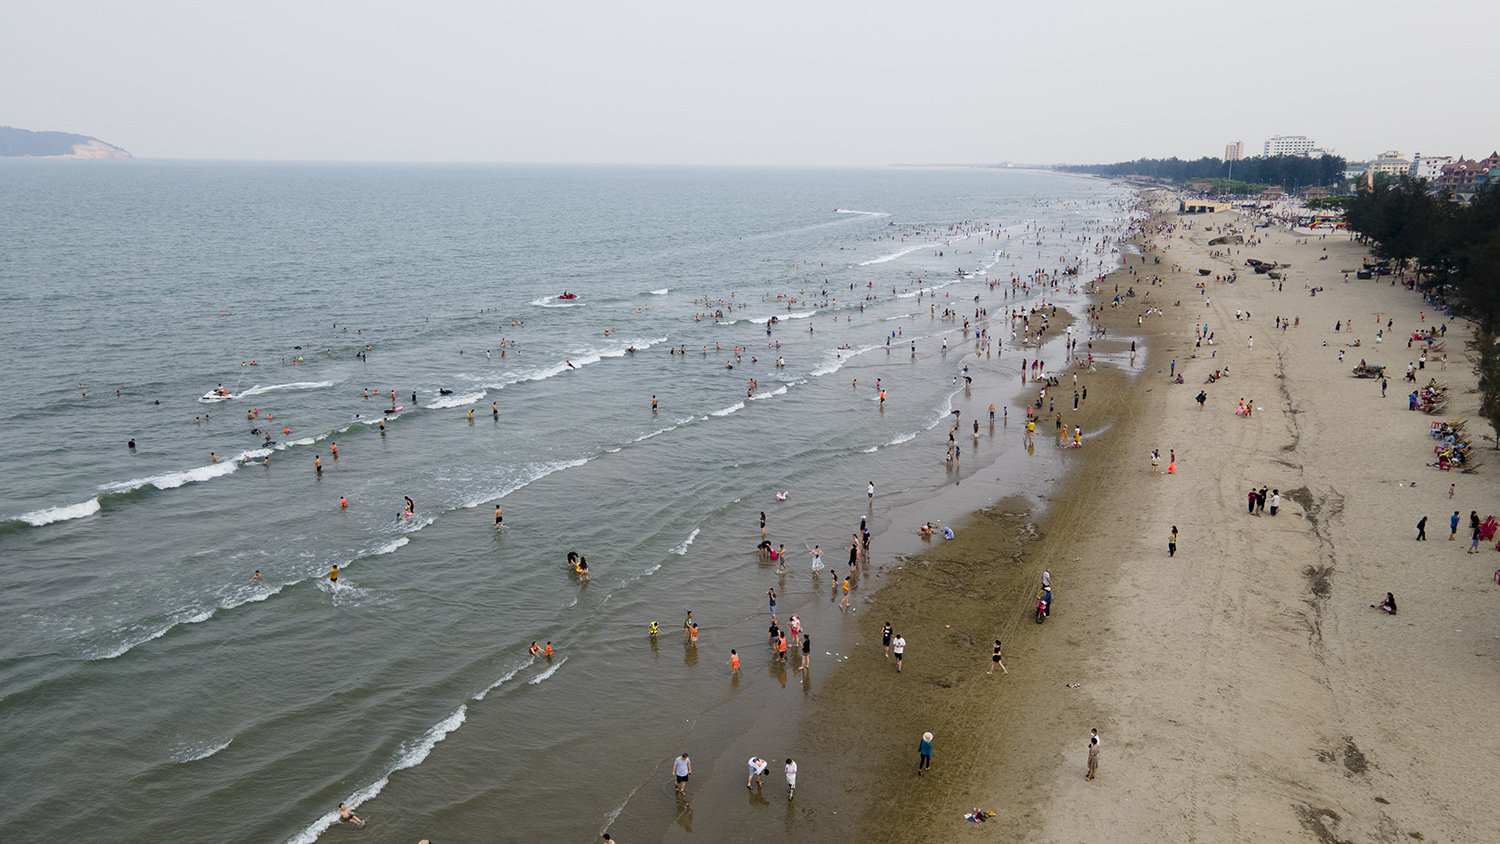 Sau 2 năm phải tạm dừng hầu hết các hoạt động du lịch, biển Cửa Lò (thị xã Cửa Lò, tỉnh Nghệ An) đã bắt đầu nhộn nhịp, có nhiều du khách phương xa tìm về giải nhiệt.